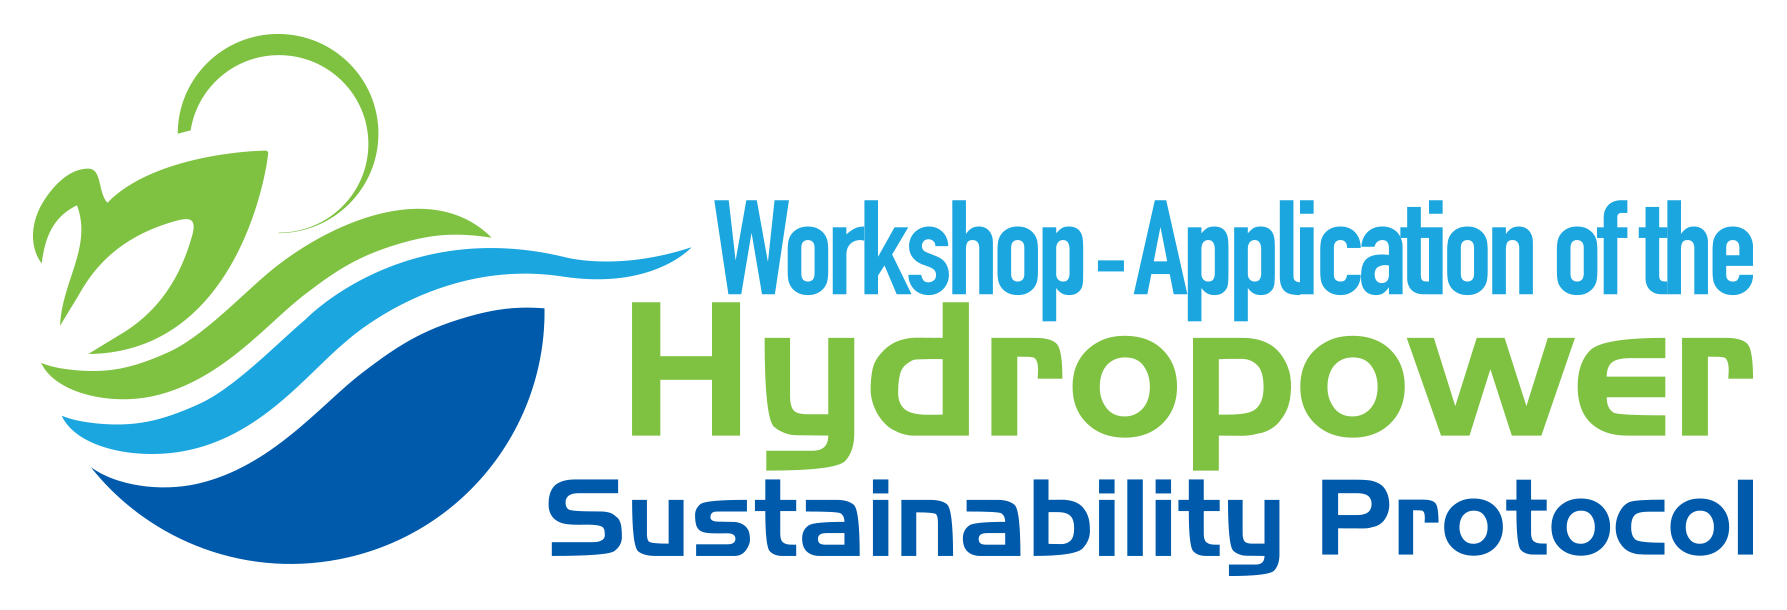 Hydropower Logo - Regional Workshop :: Aplication of the Hydropower Sustainabiliy ...